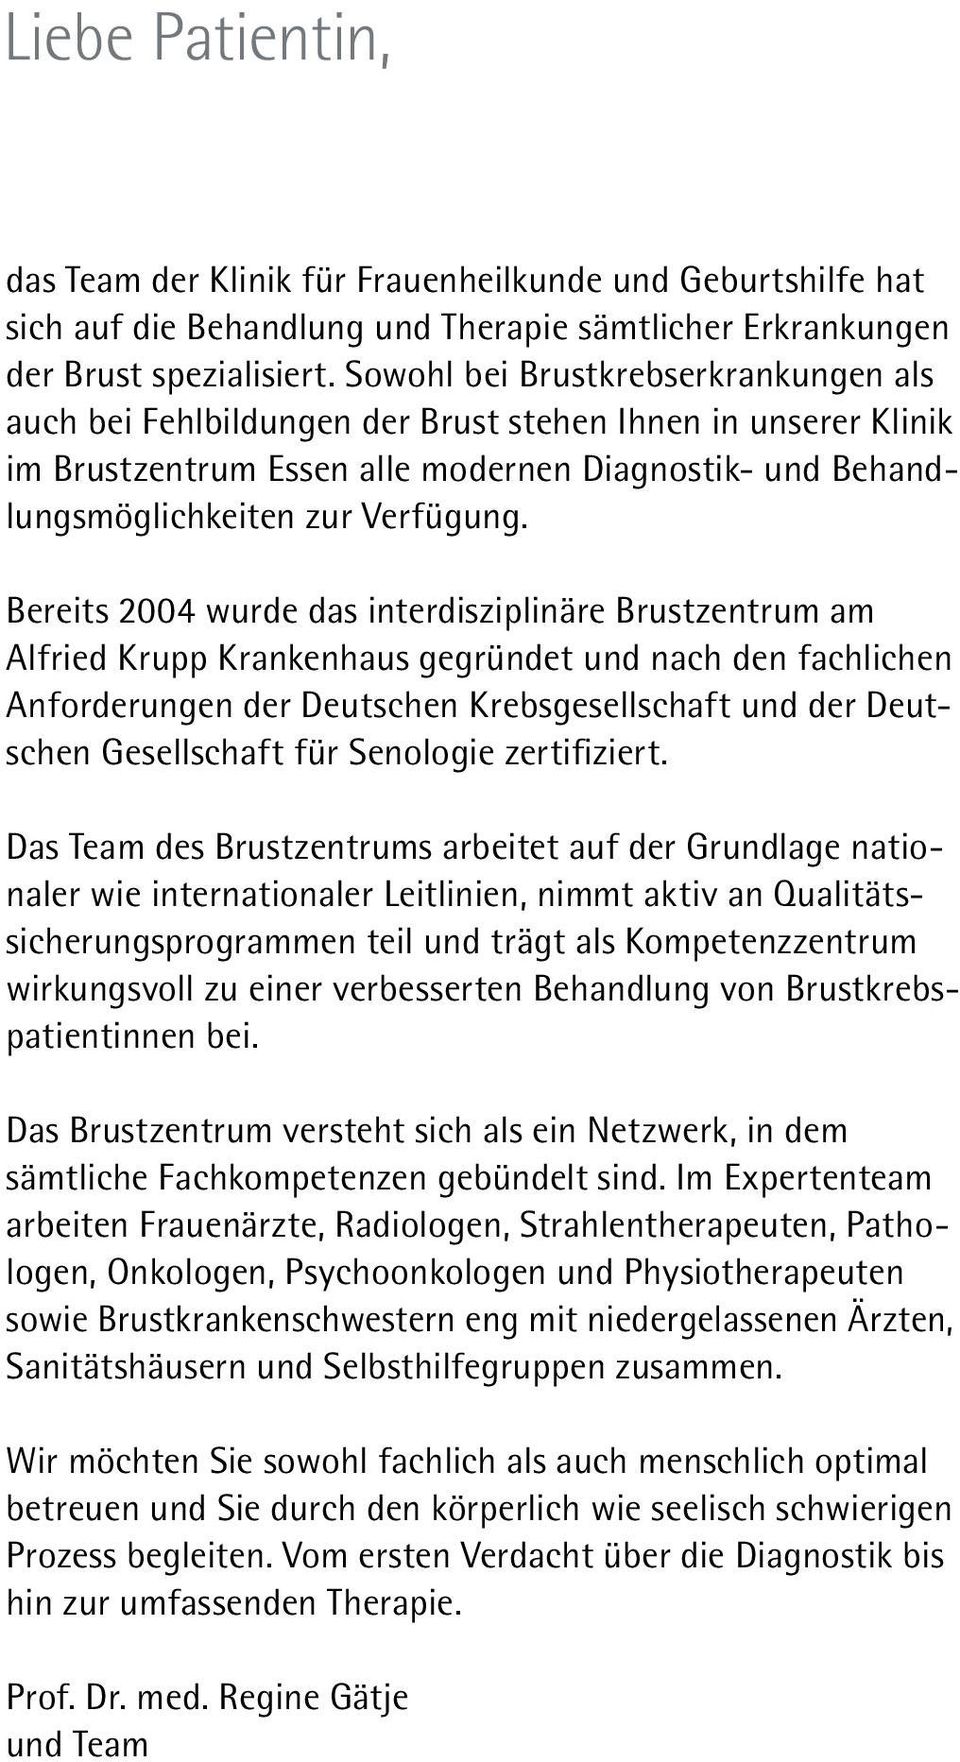 Bereits 2004 wurde das interdisziplinäre Brustzentrum am Alfried Krupp Krankenhaus gegründet und nach den fachlichen Anforderungen der Deutschen Krebsgesellschaft und der Deutschen Gesellschaft für